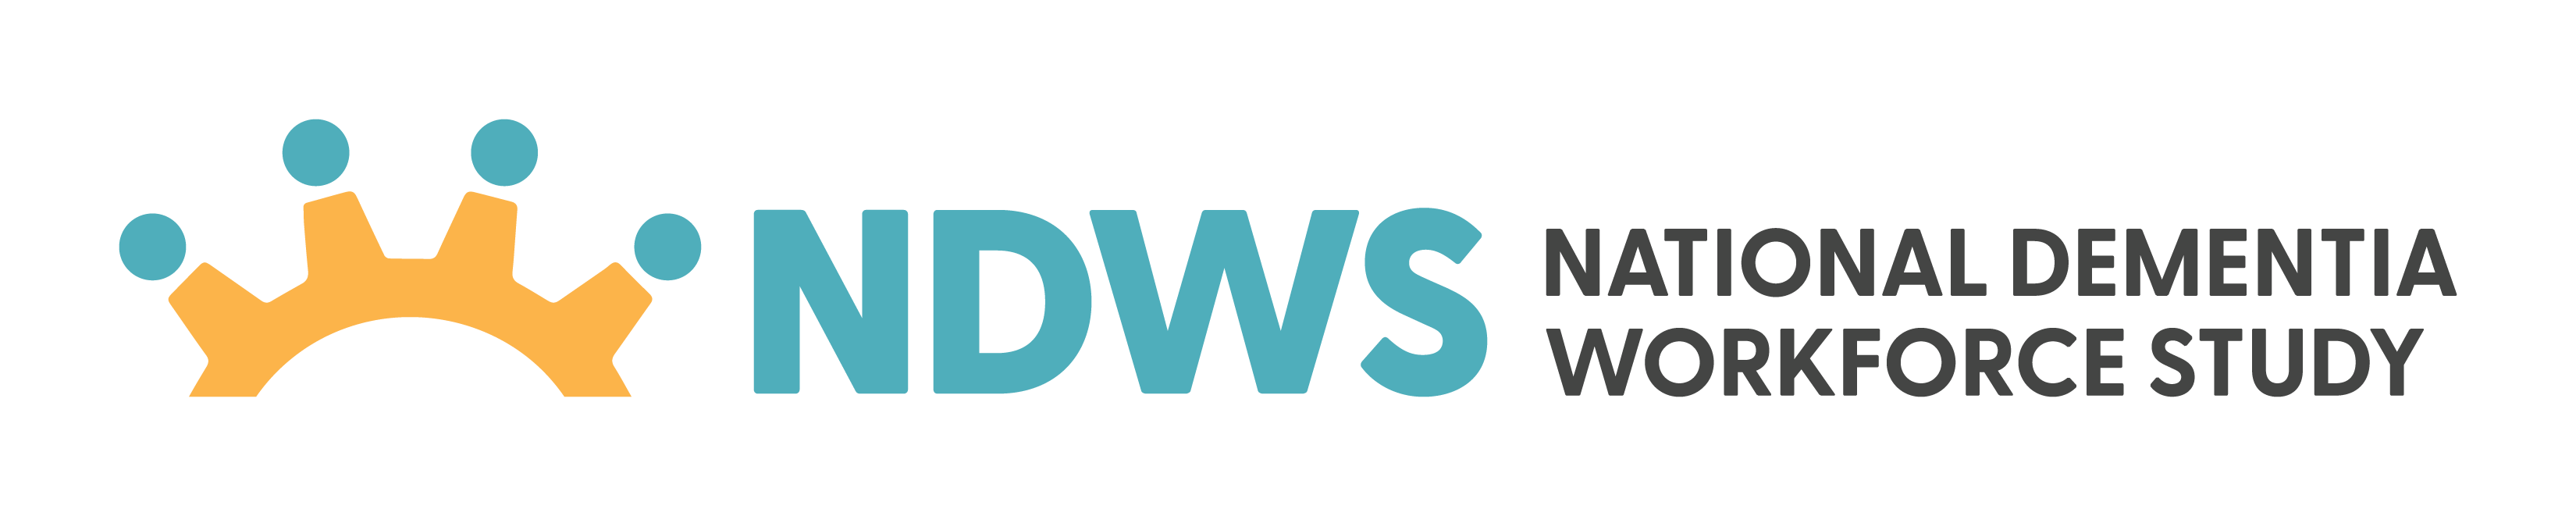 ndws logo